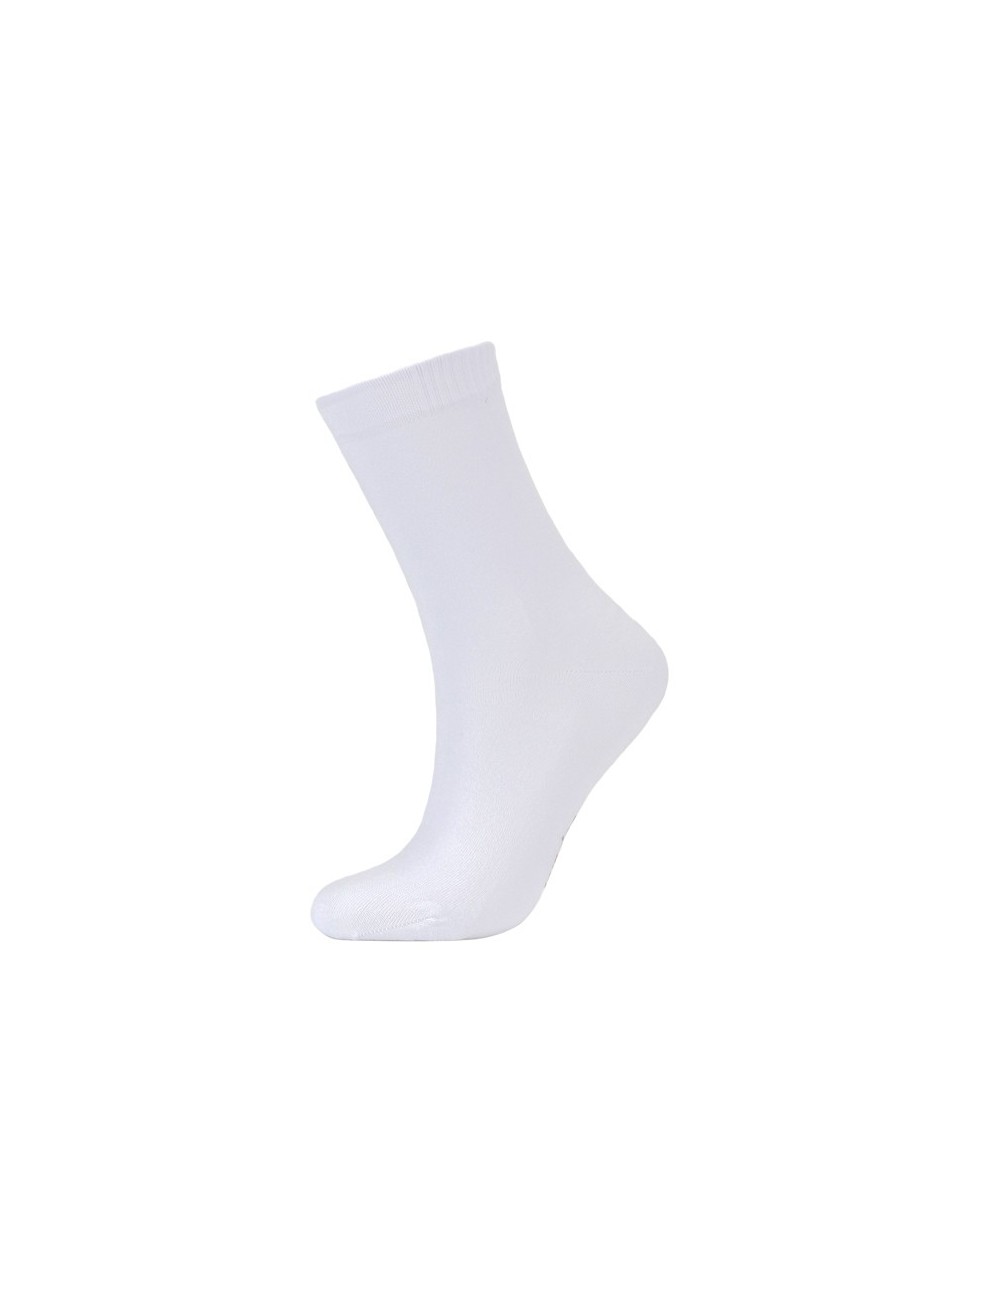 Γυναικείες Ψηλές Κάλτσες Micro-Modal 3014 Lamoda.gr